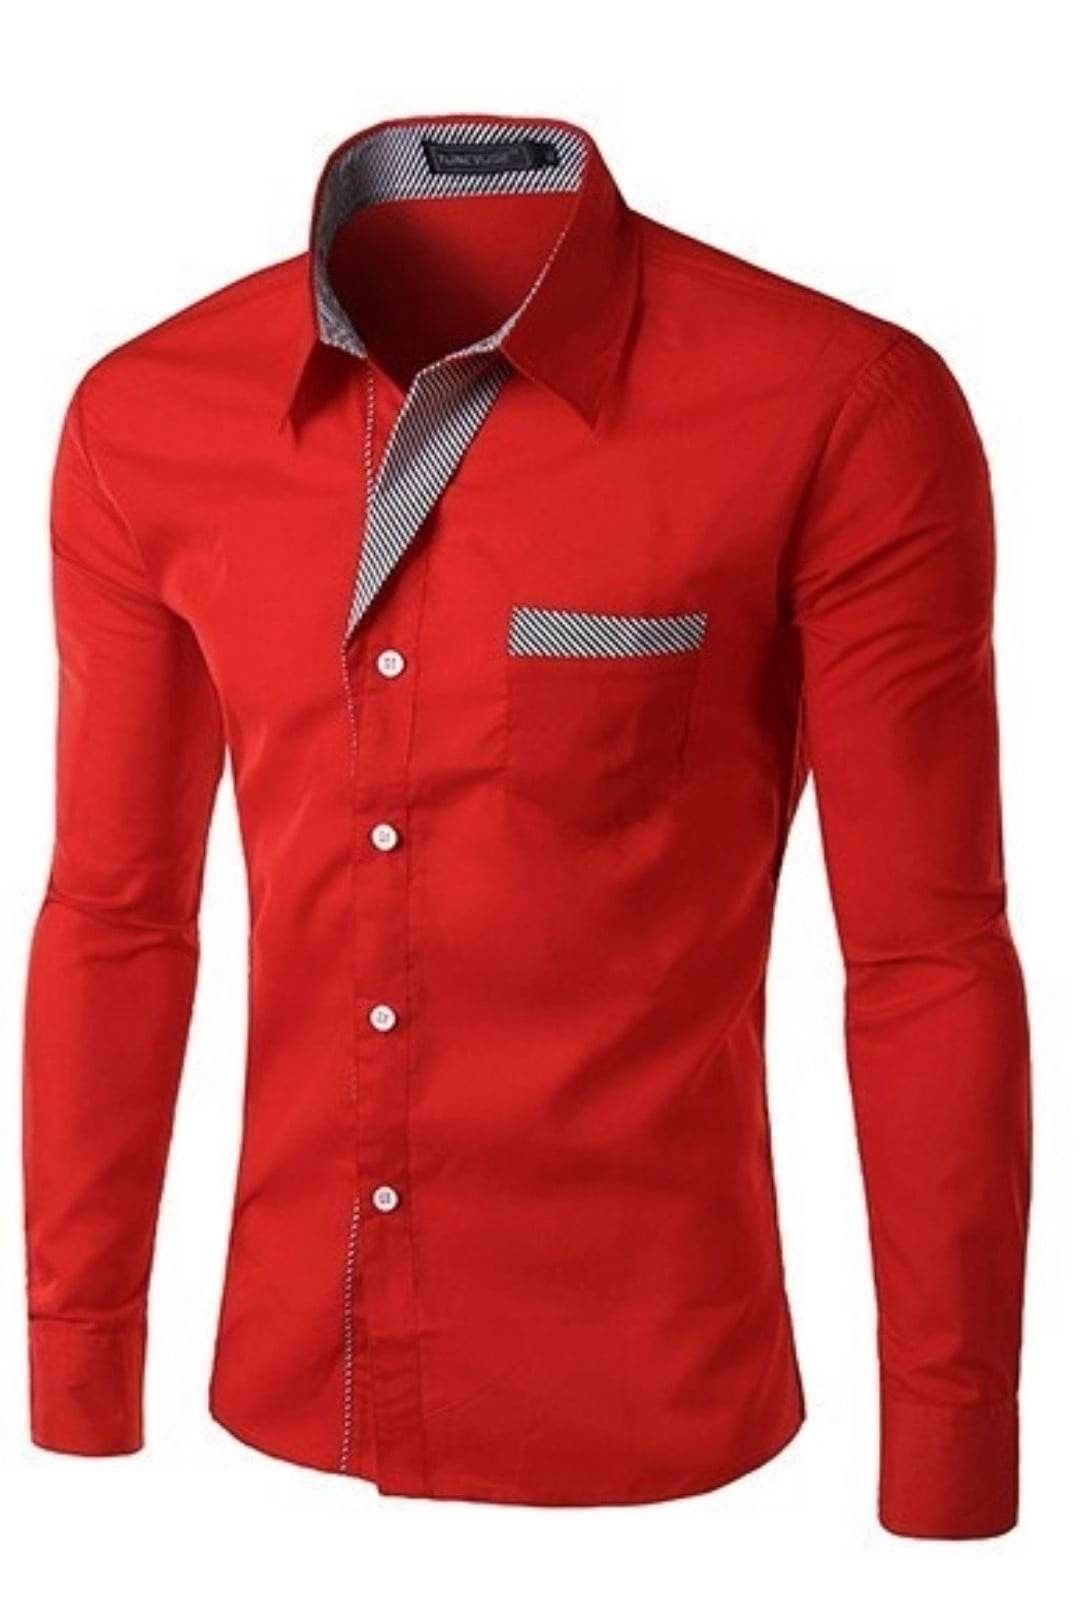 Koszula czerwona męska M nowoczesna